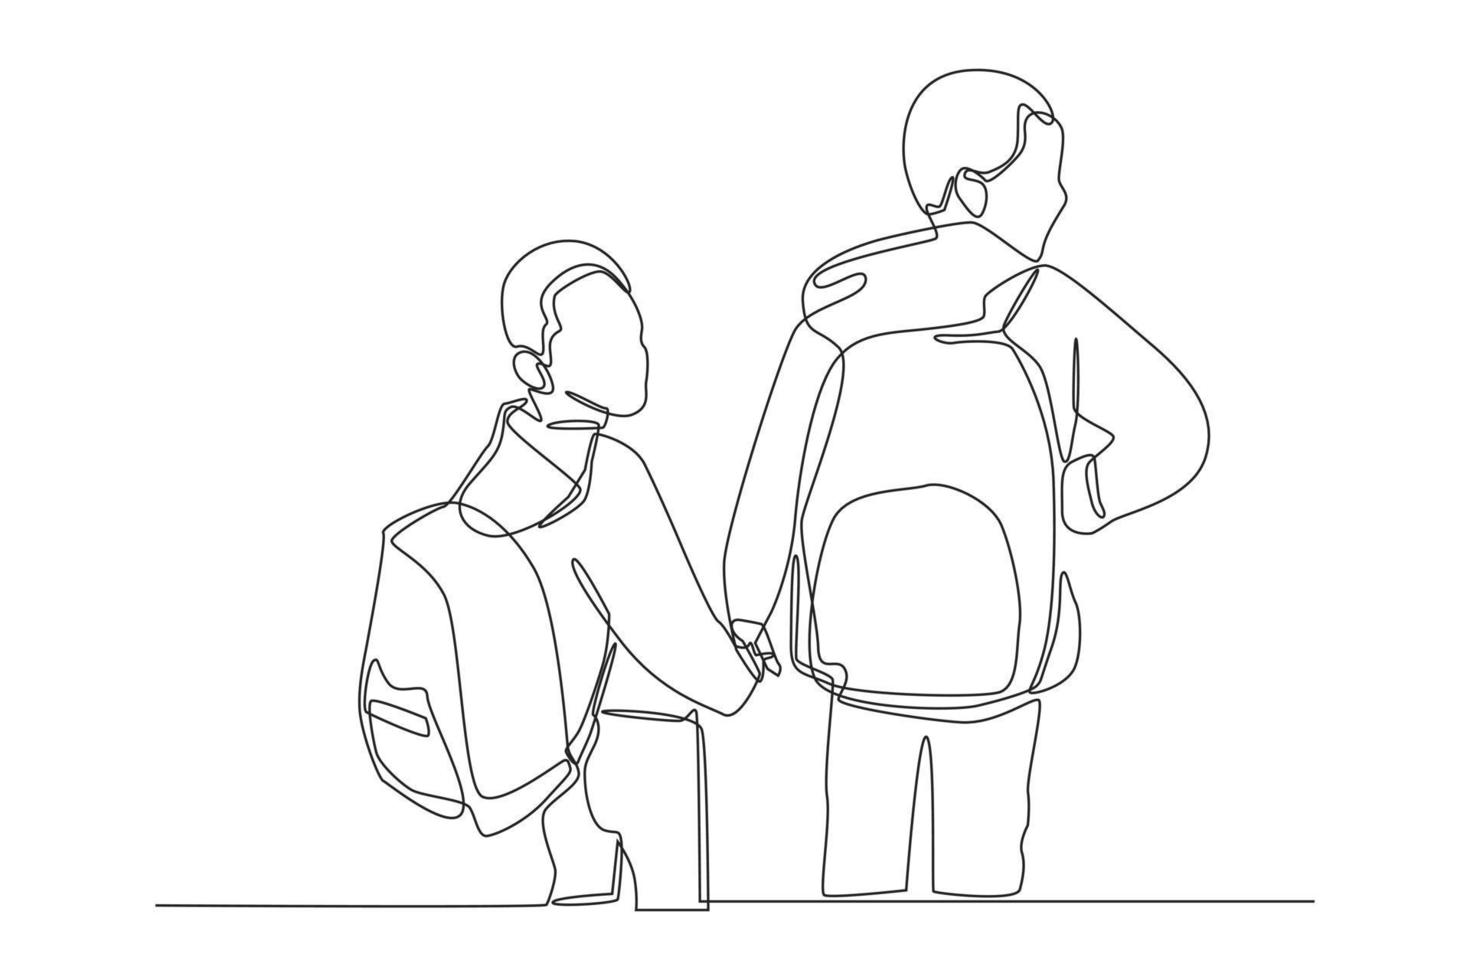 una linea continua disegna due migliori amici che studiano insieme con la borsa sulla schiena che vanno in classe. concetto di ritorno a scuola. illustrazione grafica vettoriale di disegno a linea singola.